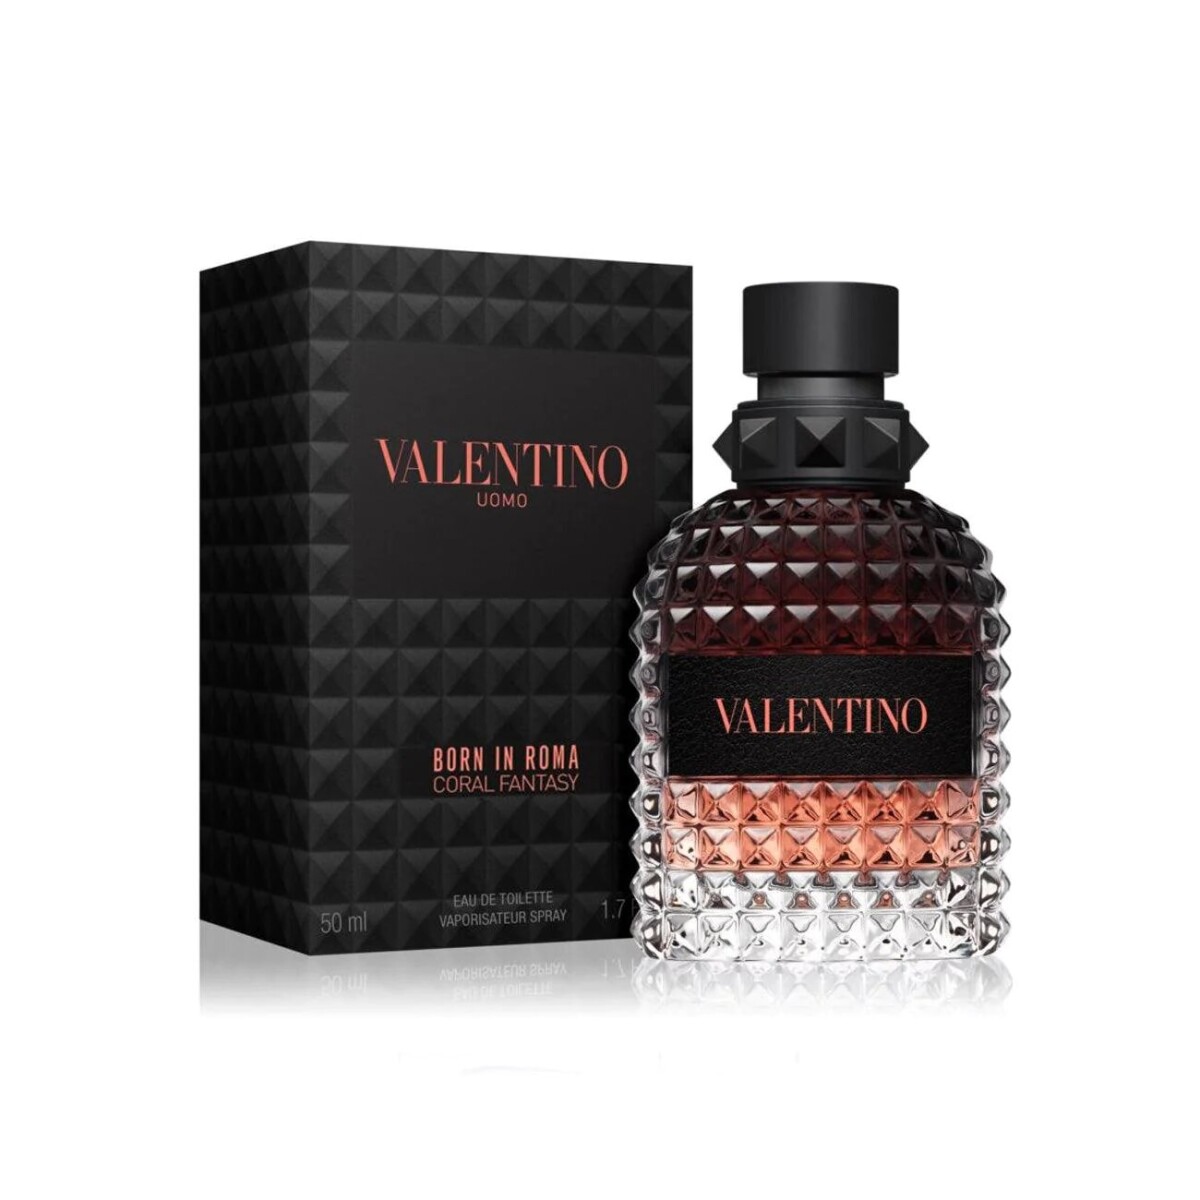 Perfume Valentino Uomo Born In Roma Coral Fantasy 50 Ml - 001 